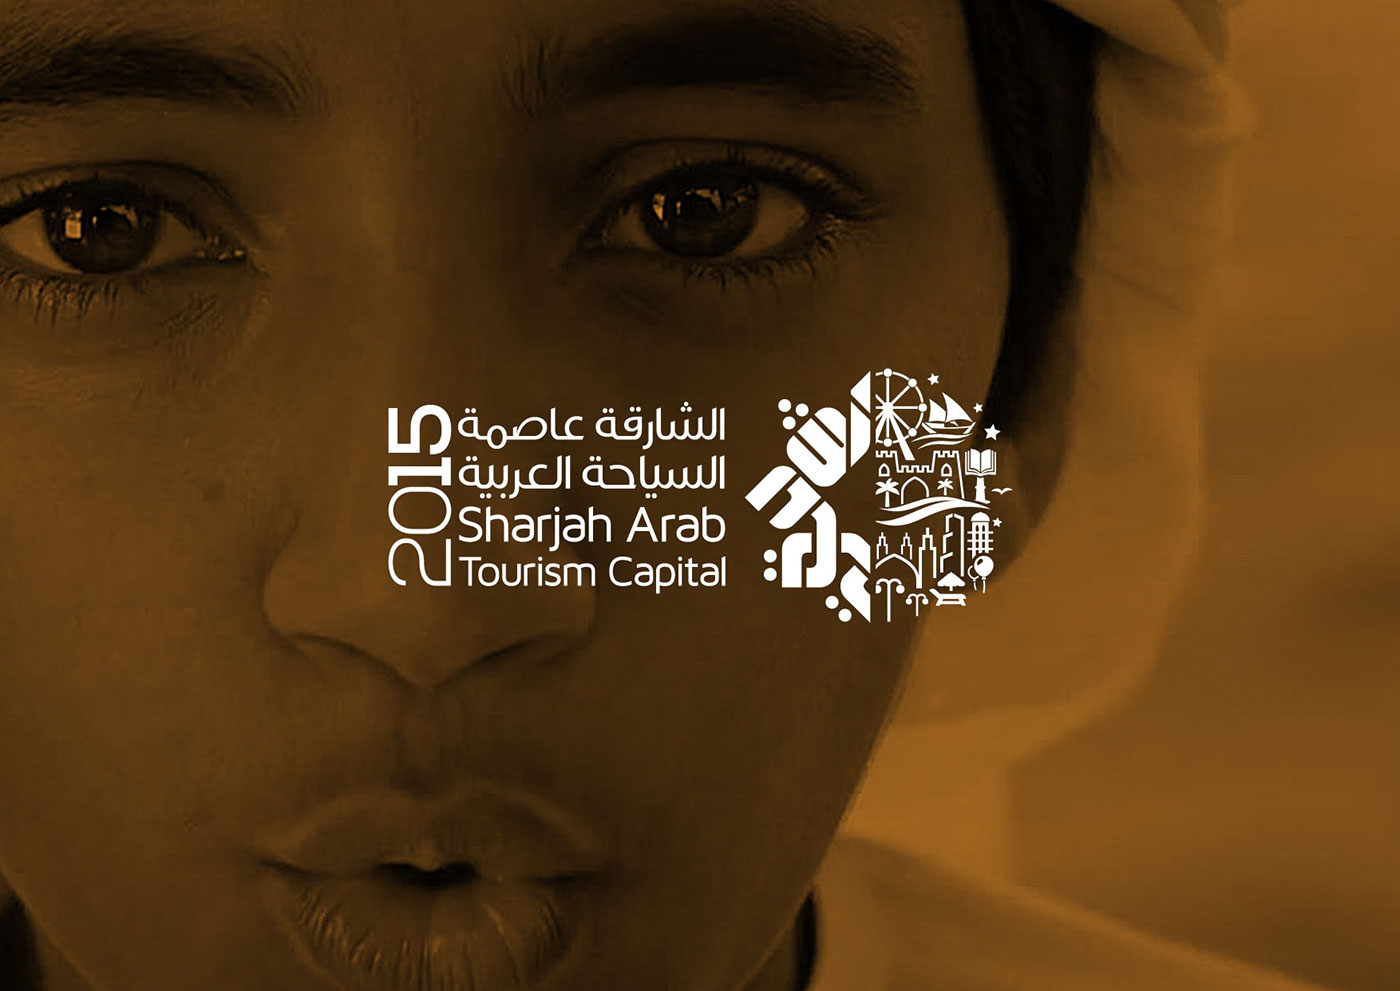 sharjah arab tourism capital logo